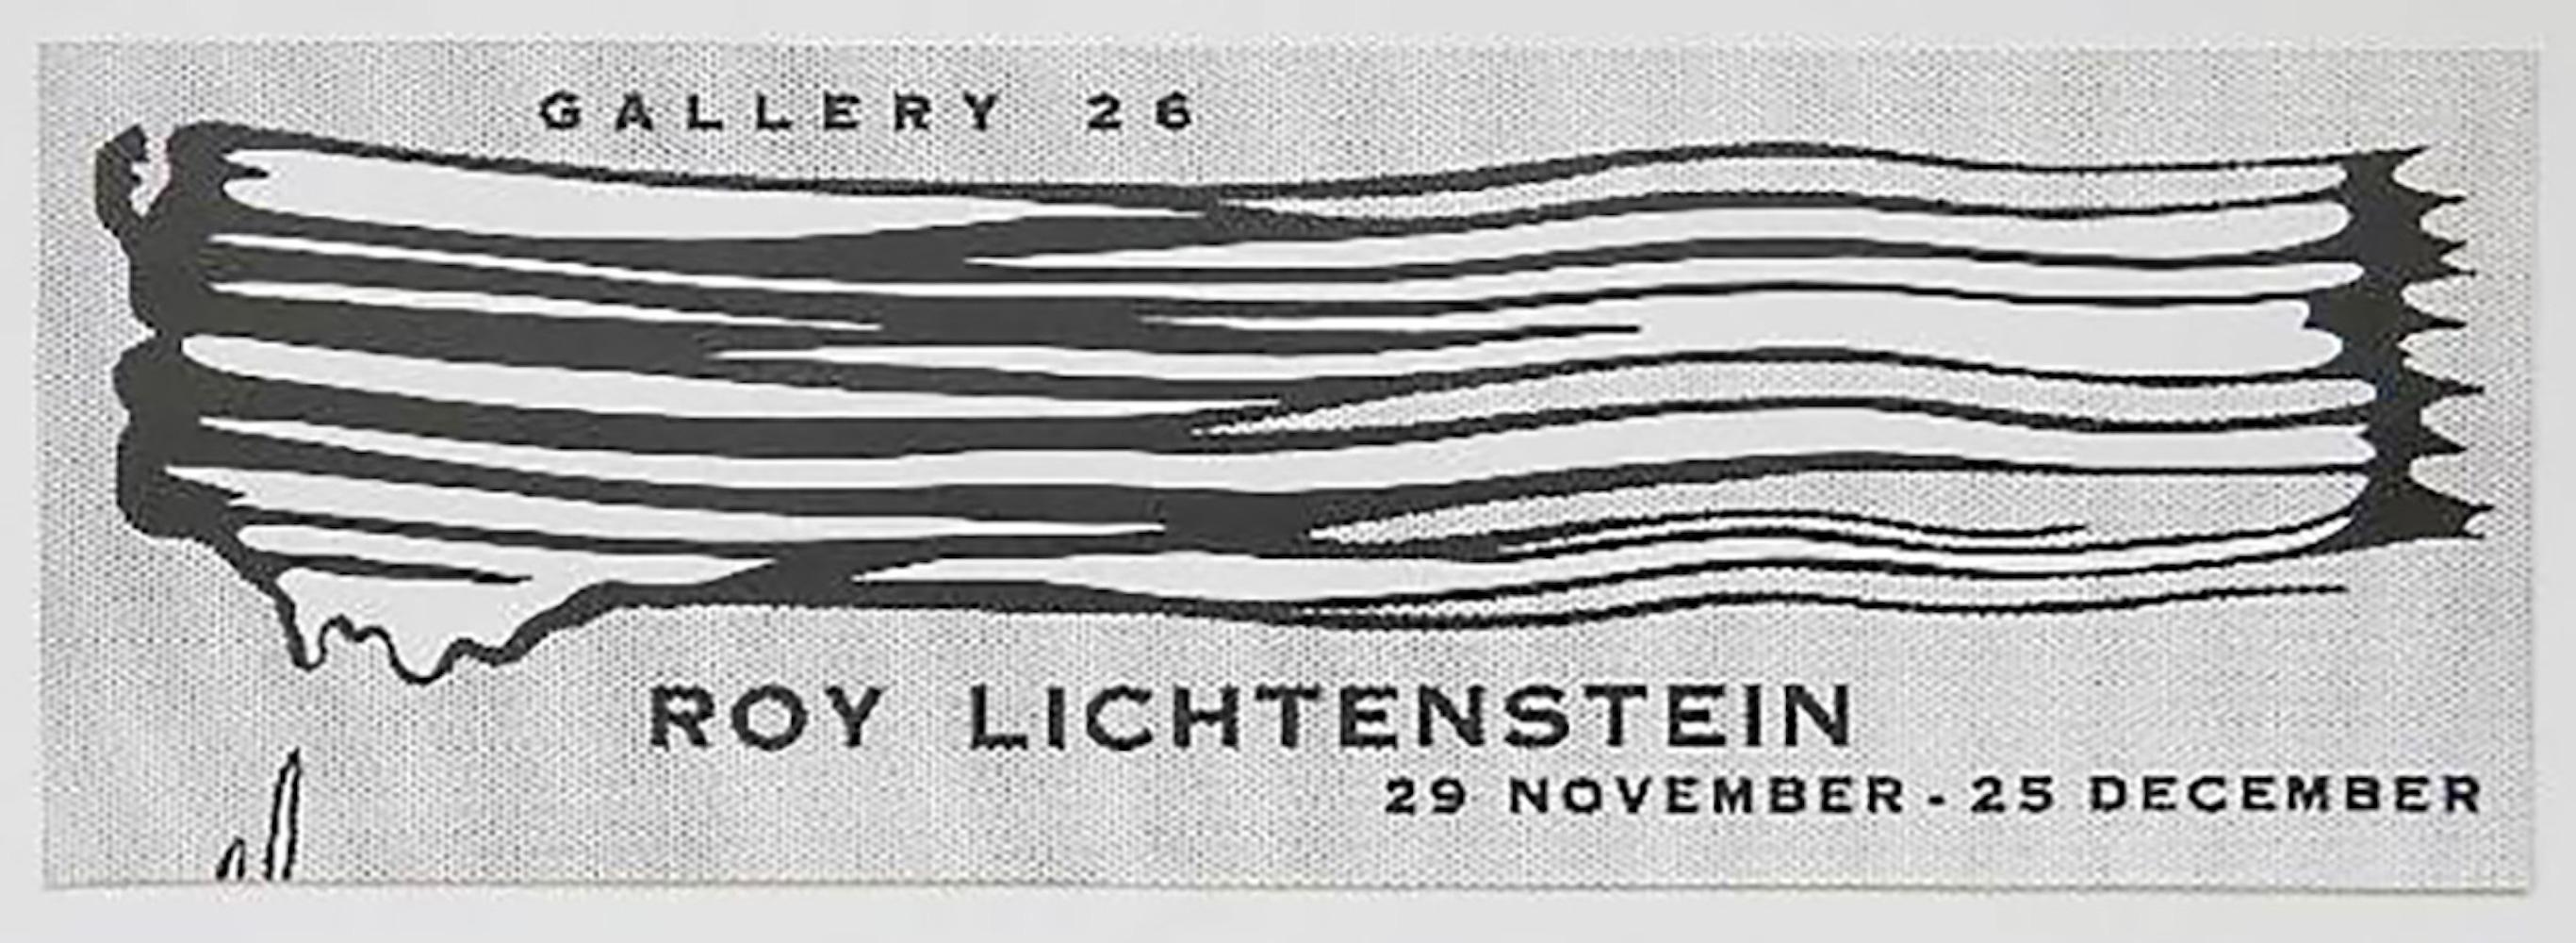 Galerie 26 Ausstellungsplakat (Pop-Art), Print, von Roy Lichtenstein